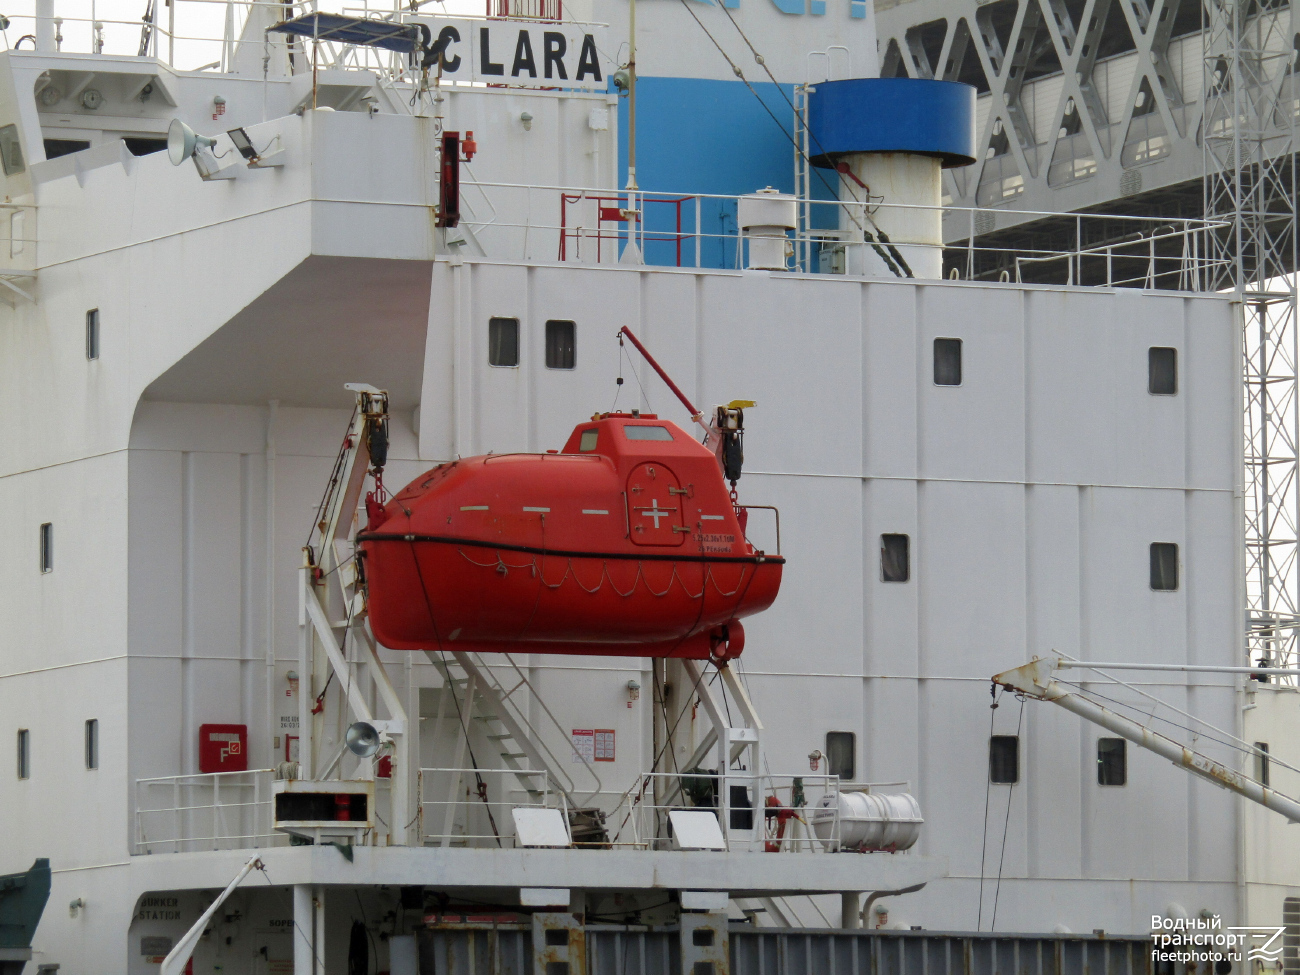 BC Lara. Lifeboats